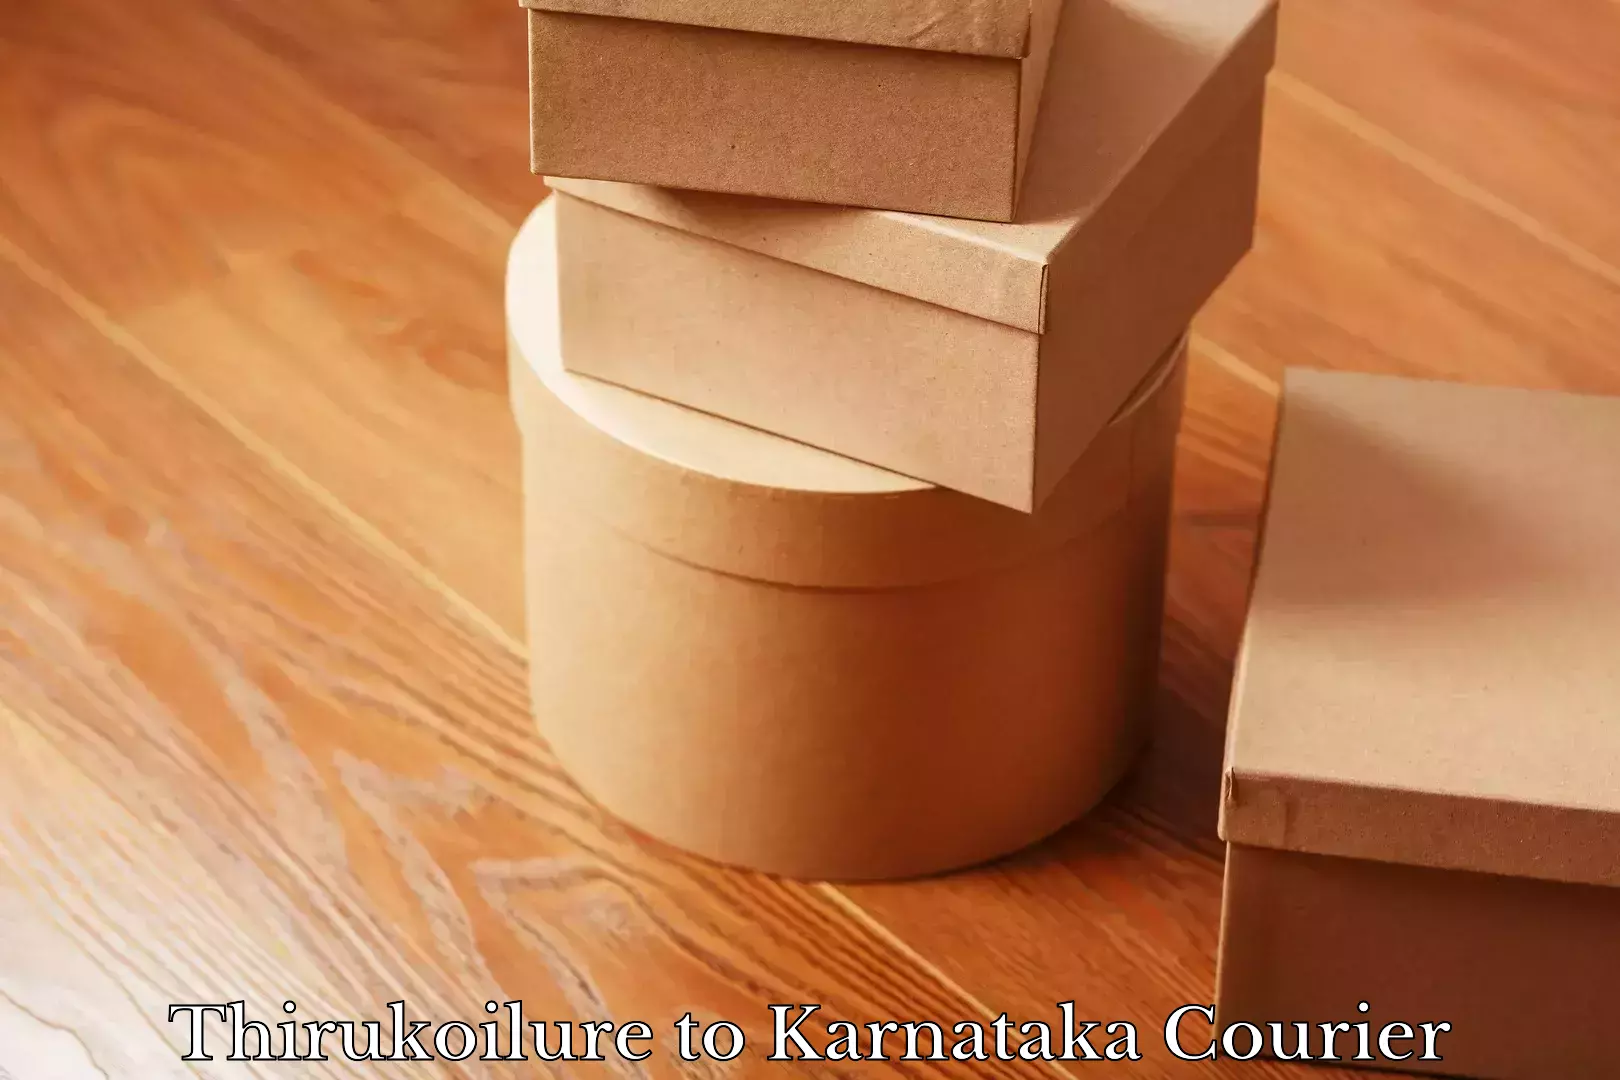 Courier service partnerships Thirukoilure to Karnataka